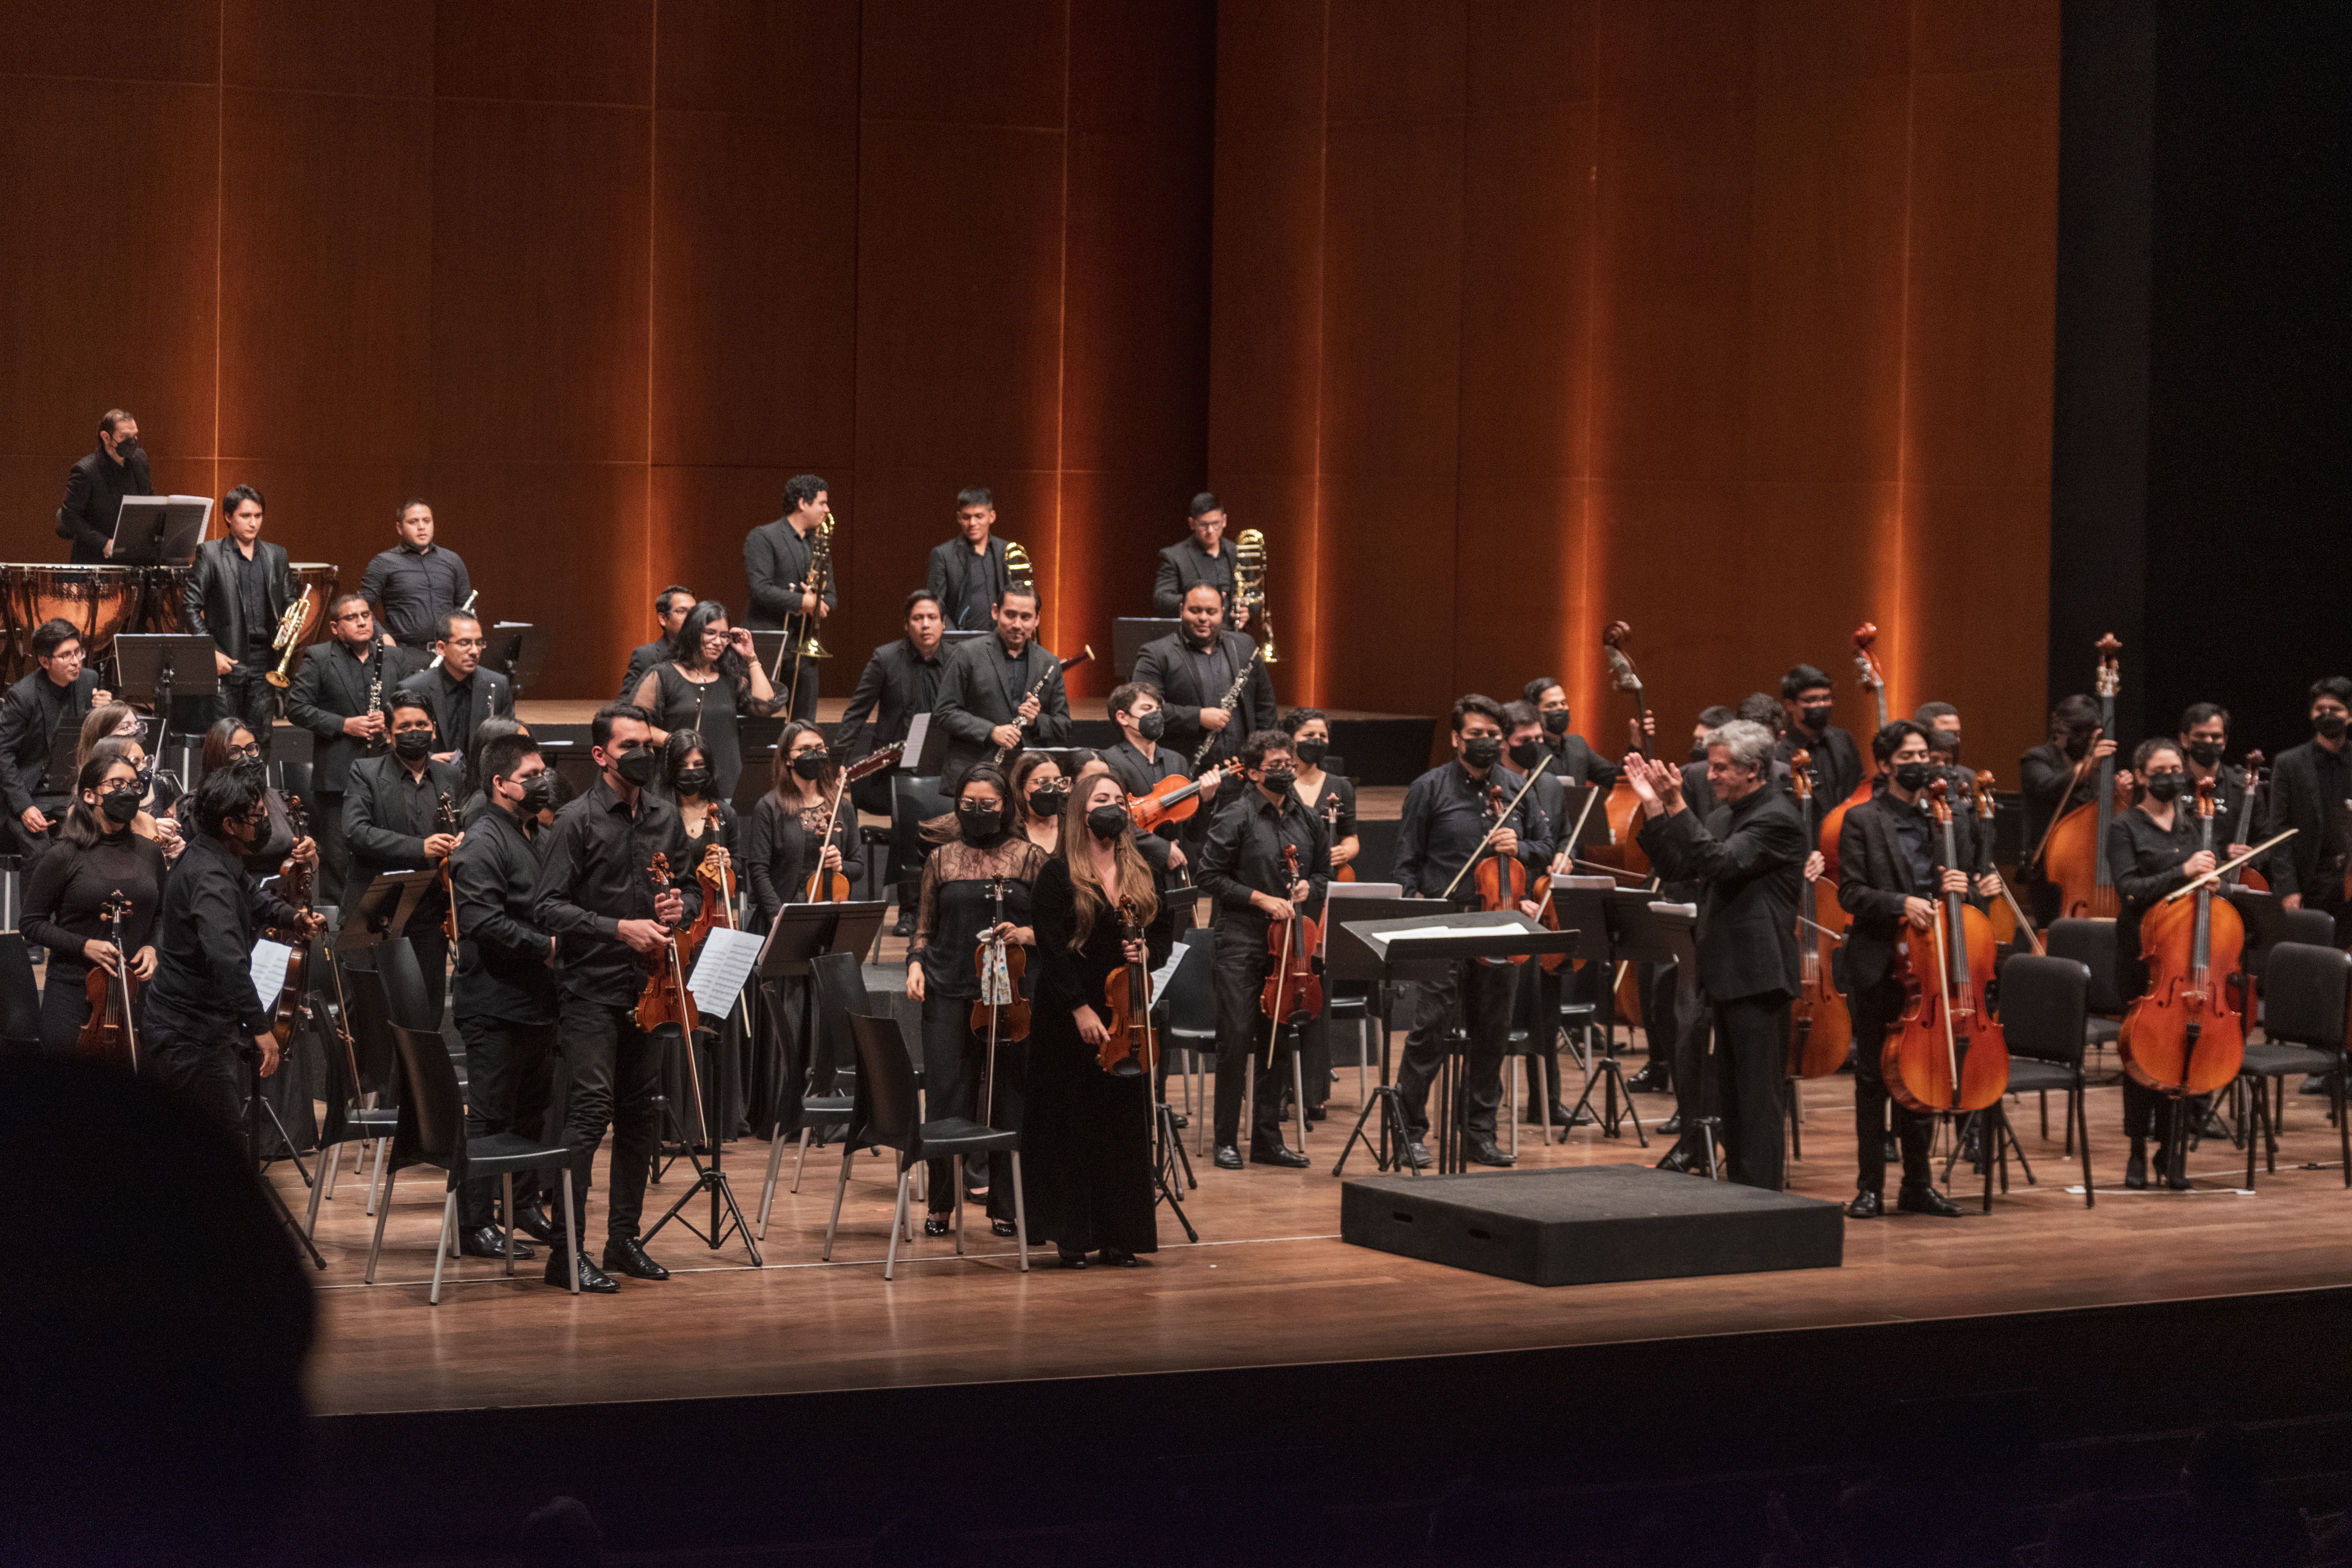 Orquesta Sinfónica Nacional Juvenil Bicentenario presenta “Tragedia y Consolación” en el Gran Teatro Nacional